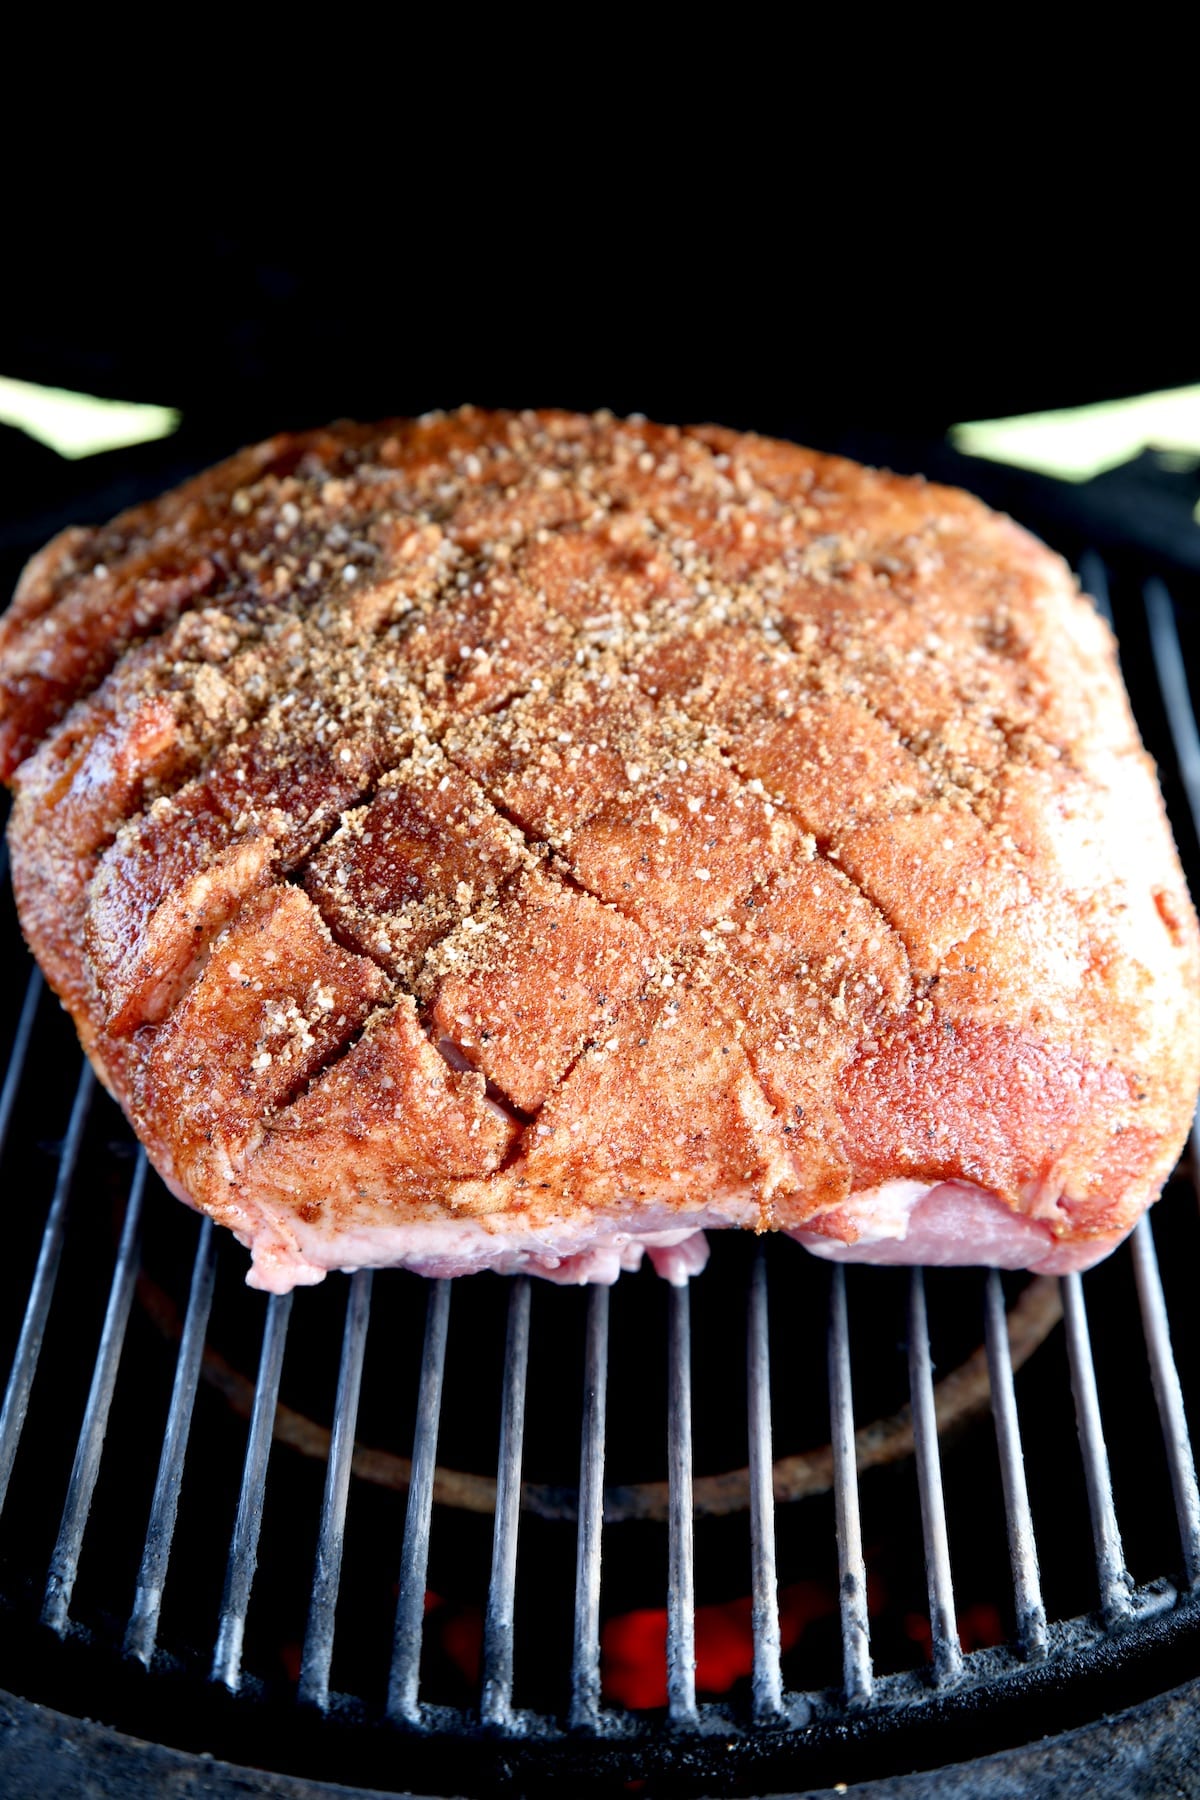 Pork butt on a grill.